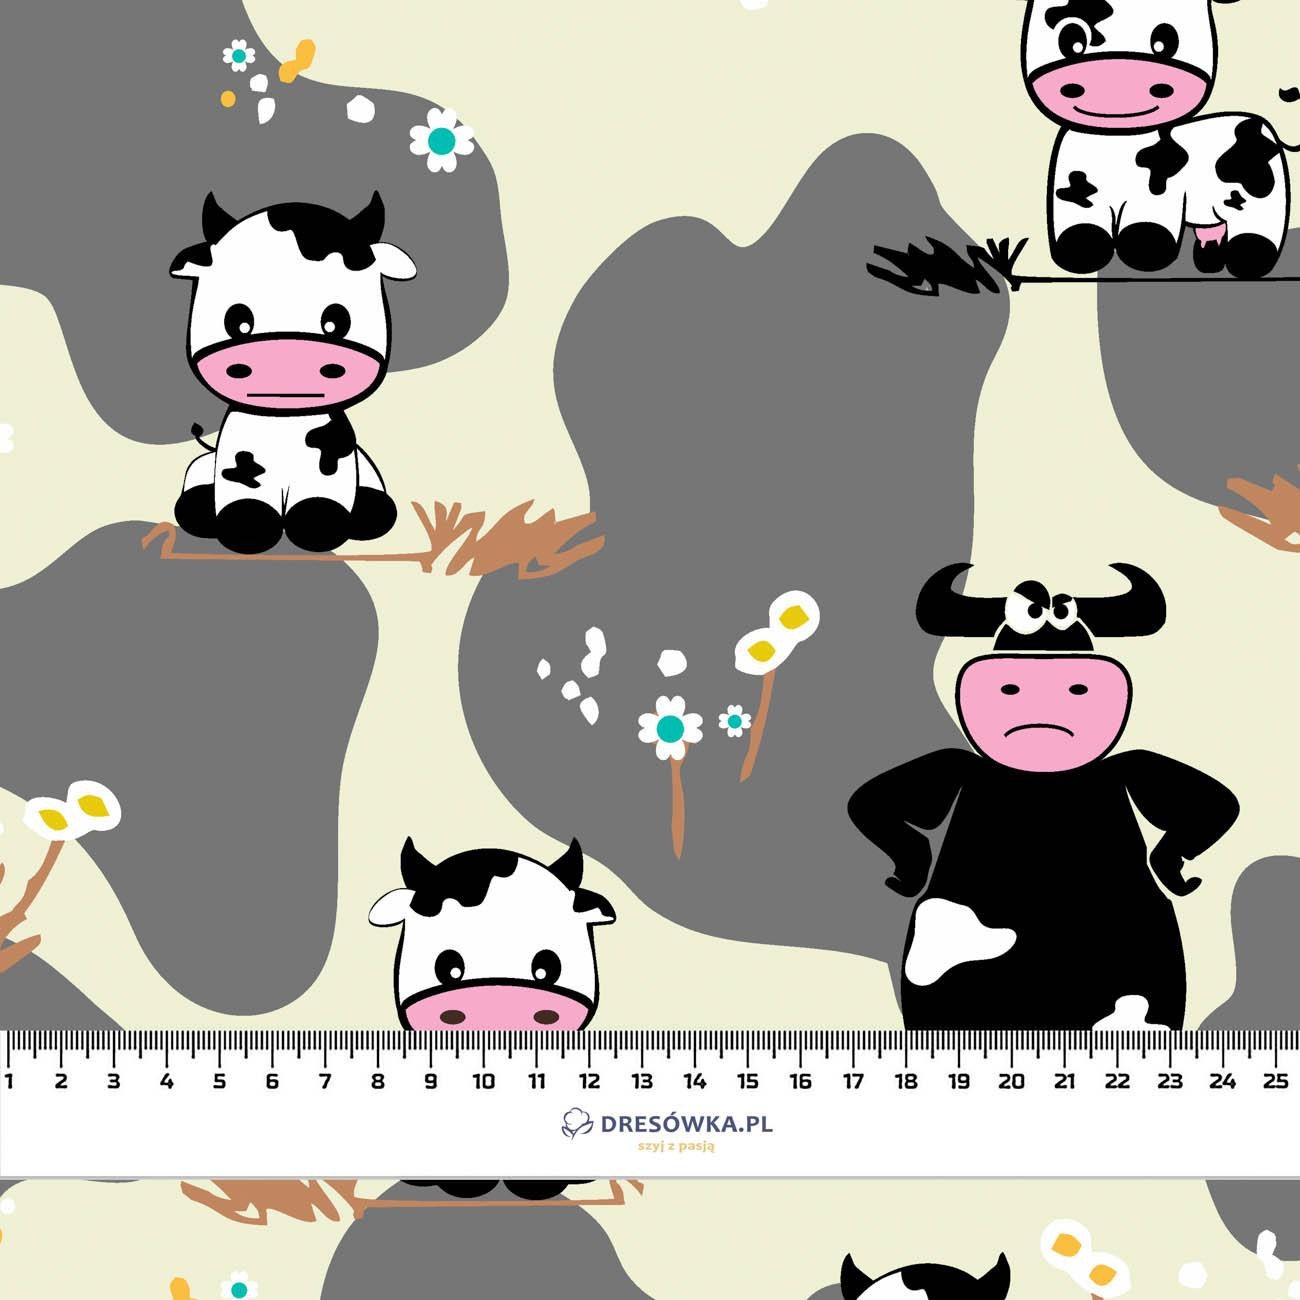 COWS ON BEIGE - Waterproof woven fabric